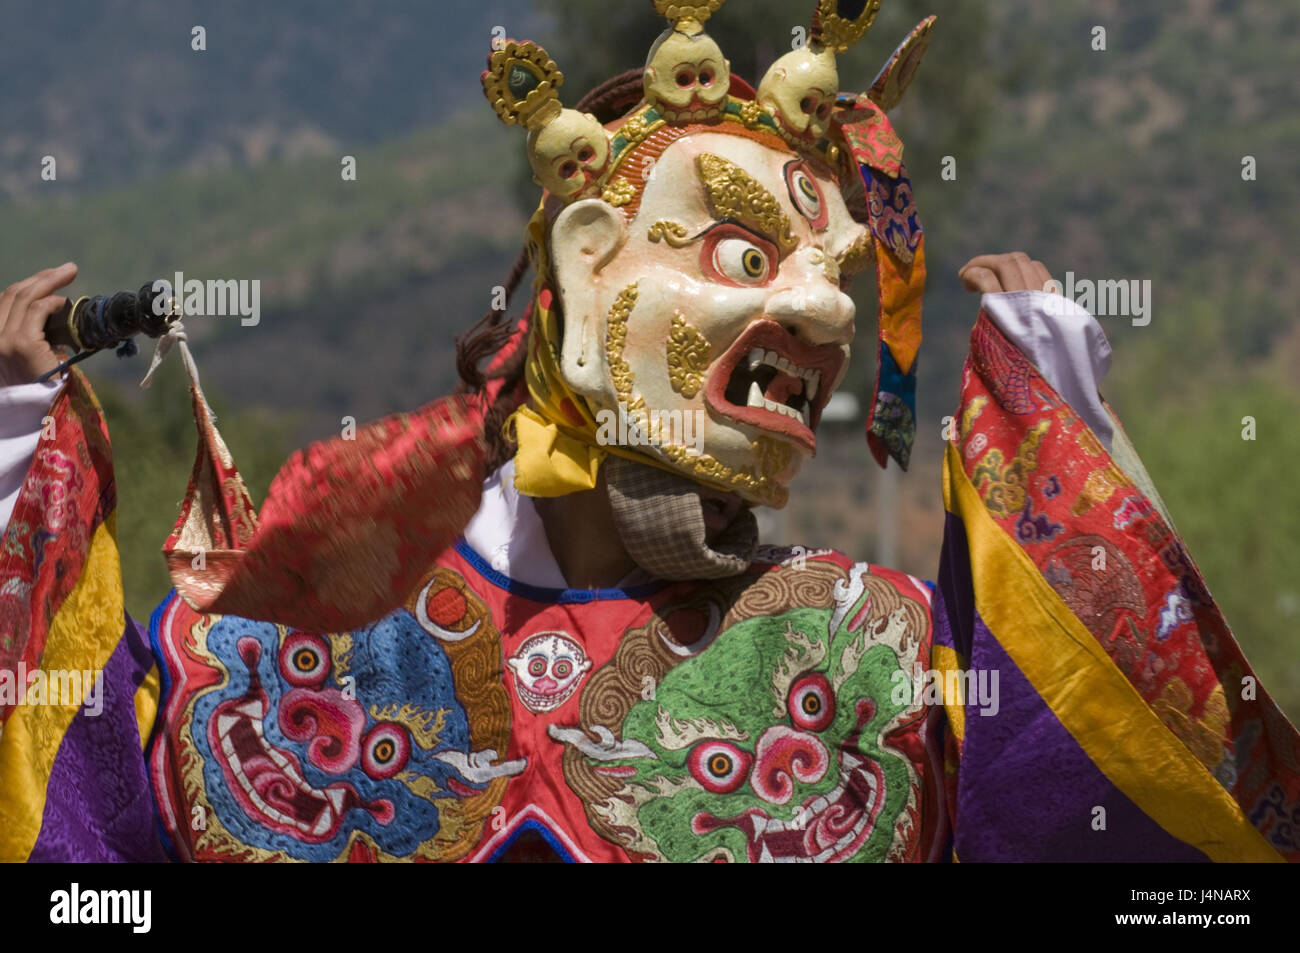 L'uomo, maschera, daemon, danza, Paro Tsechu, Bhutan, ritratto, nessun modello di rilascio, Foto Stock